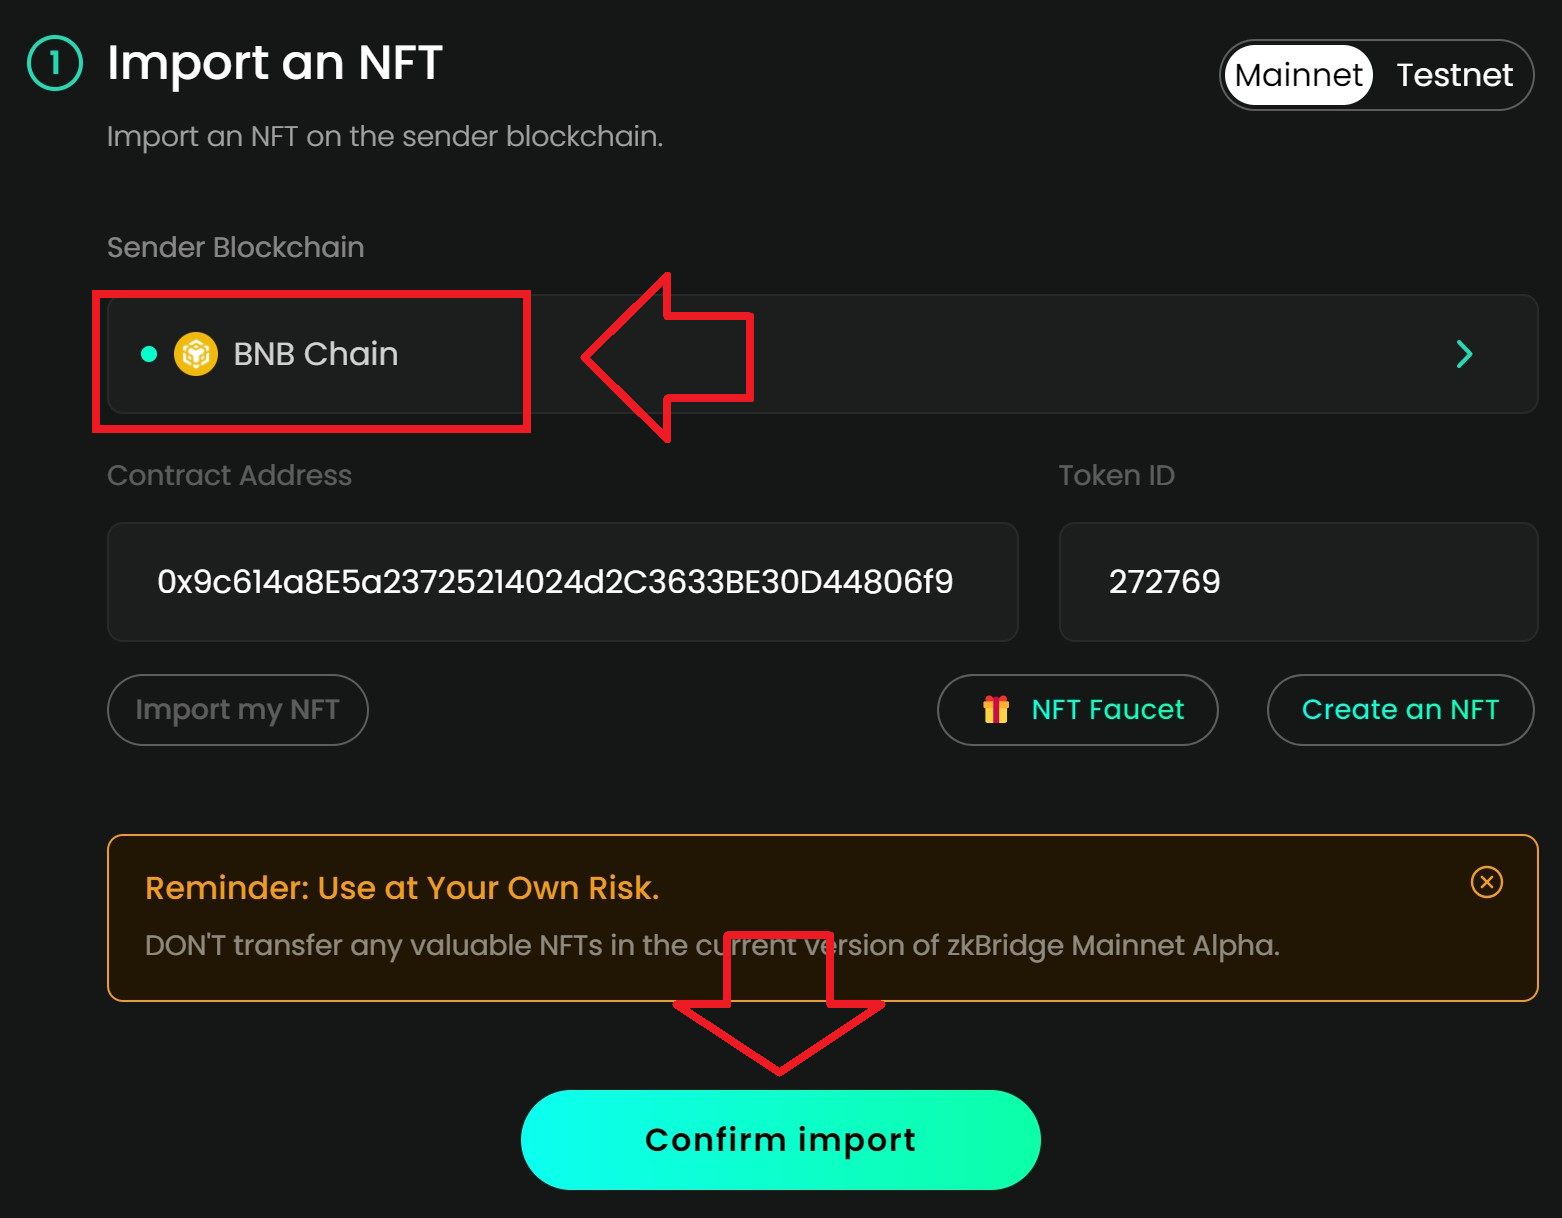 Importiere ein NFT auf die opBNB Chain